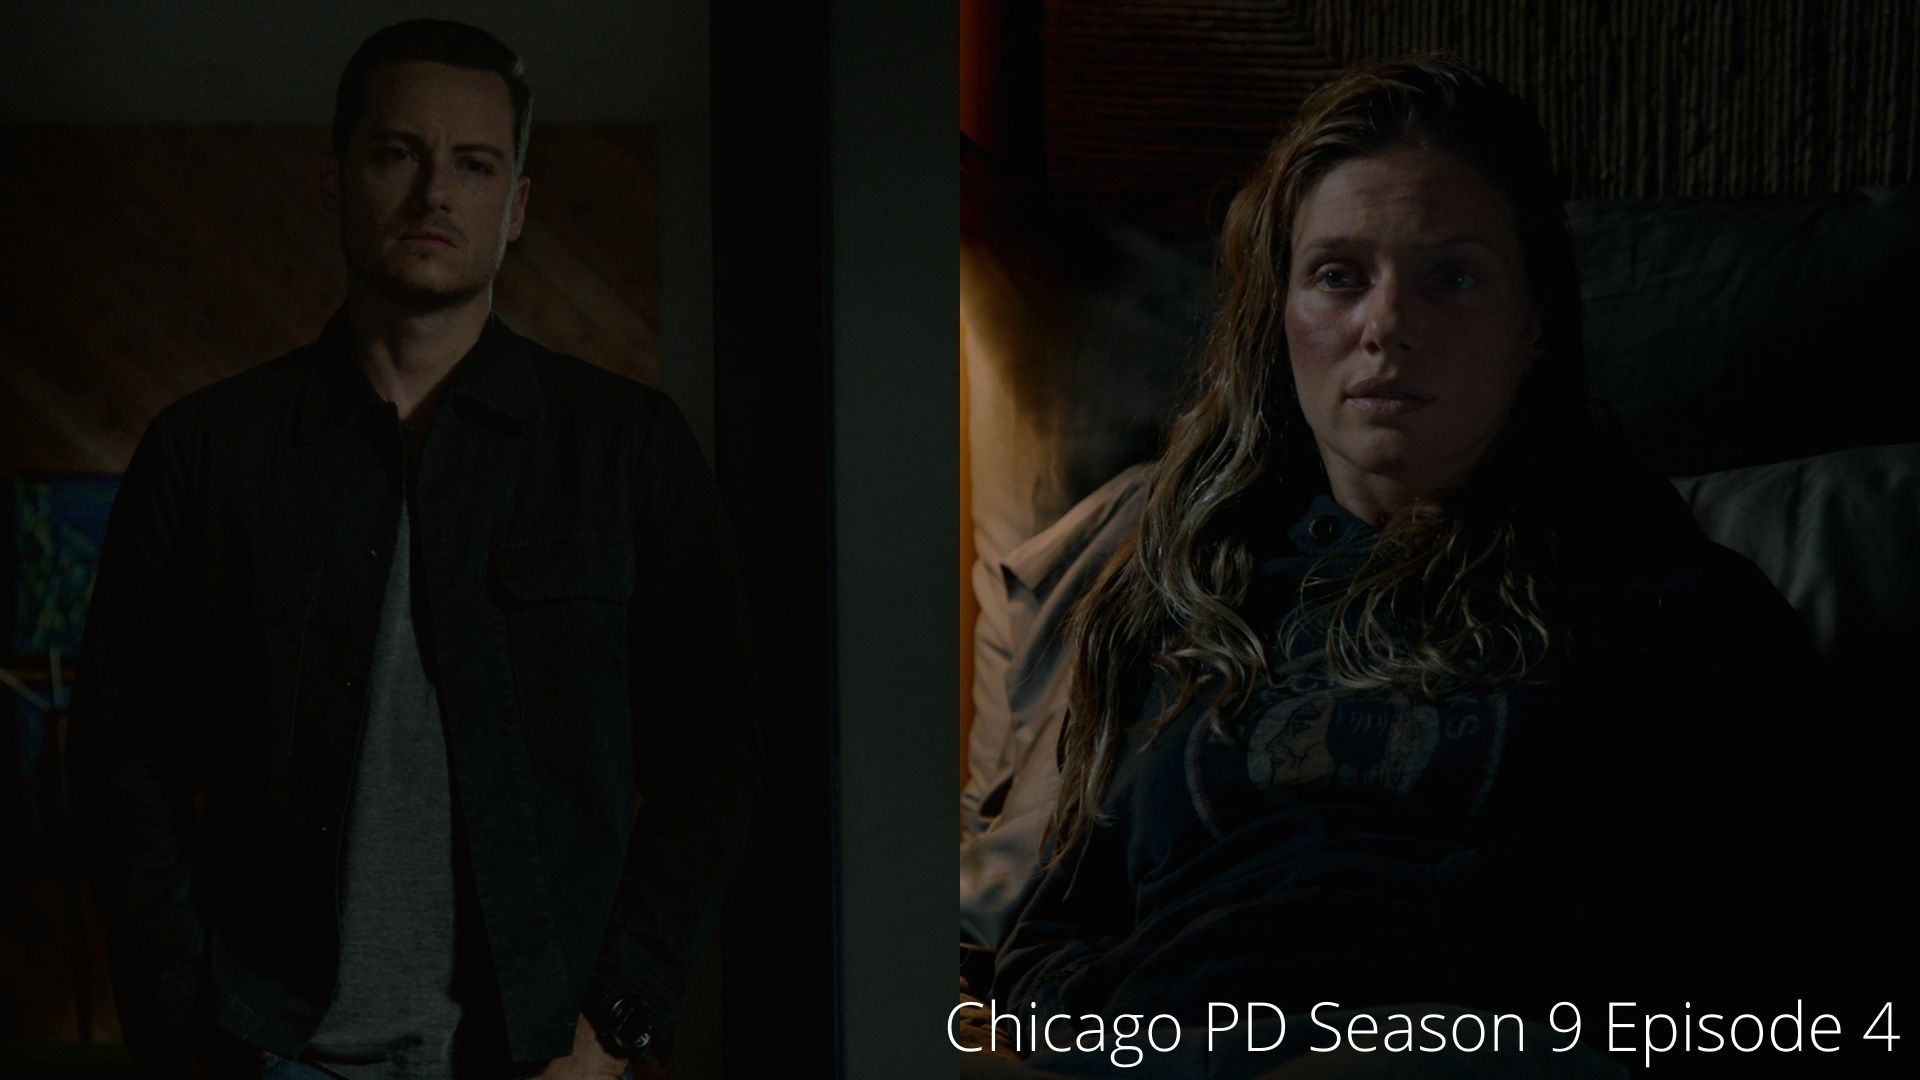 Chicago PD Season 9 Episode 5